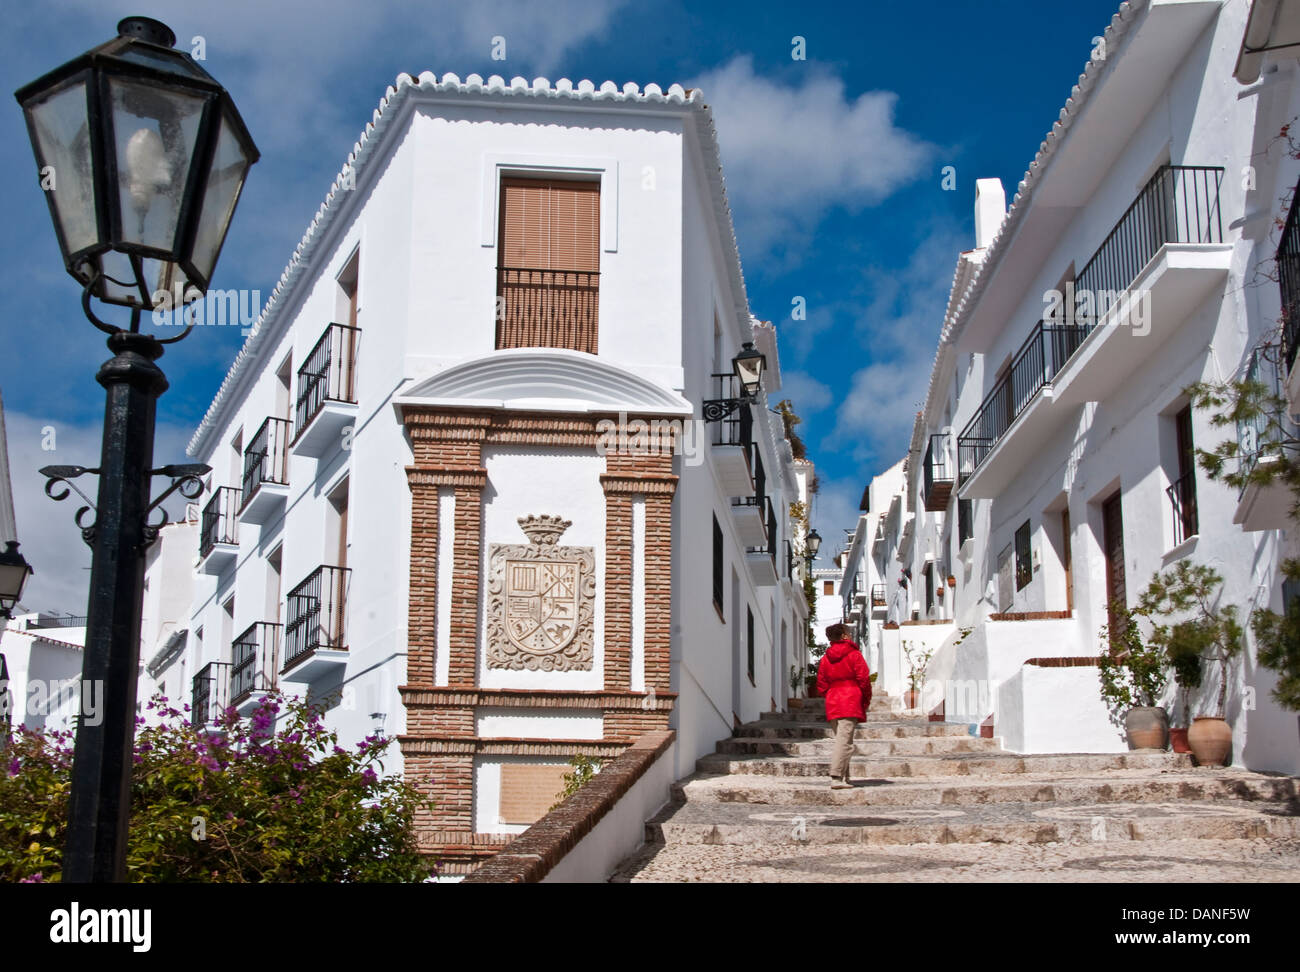 Frigiliana, andalusischen weißen Dorf an der Costa Del Sol, Spanien. Stockfoto